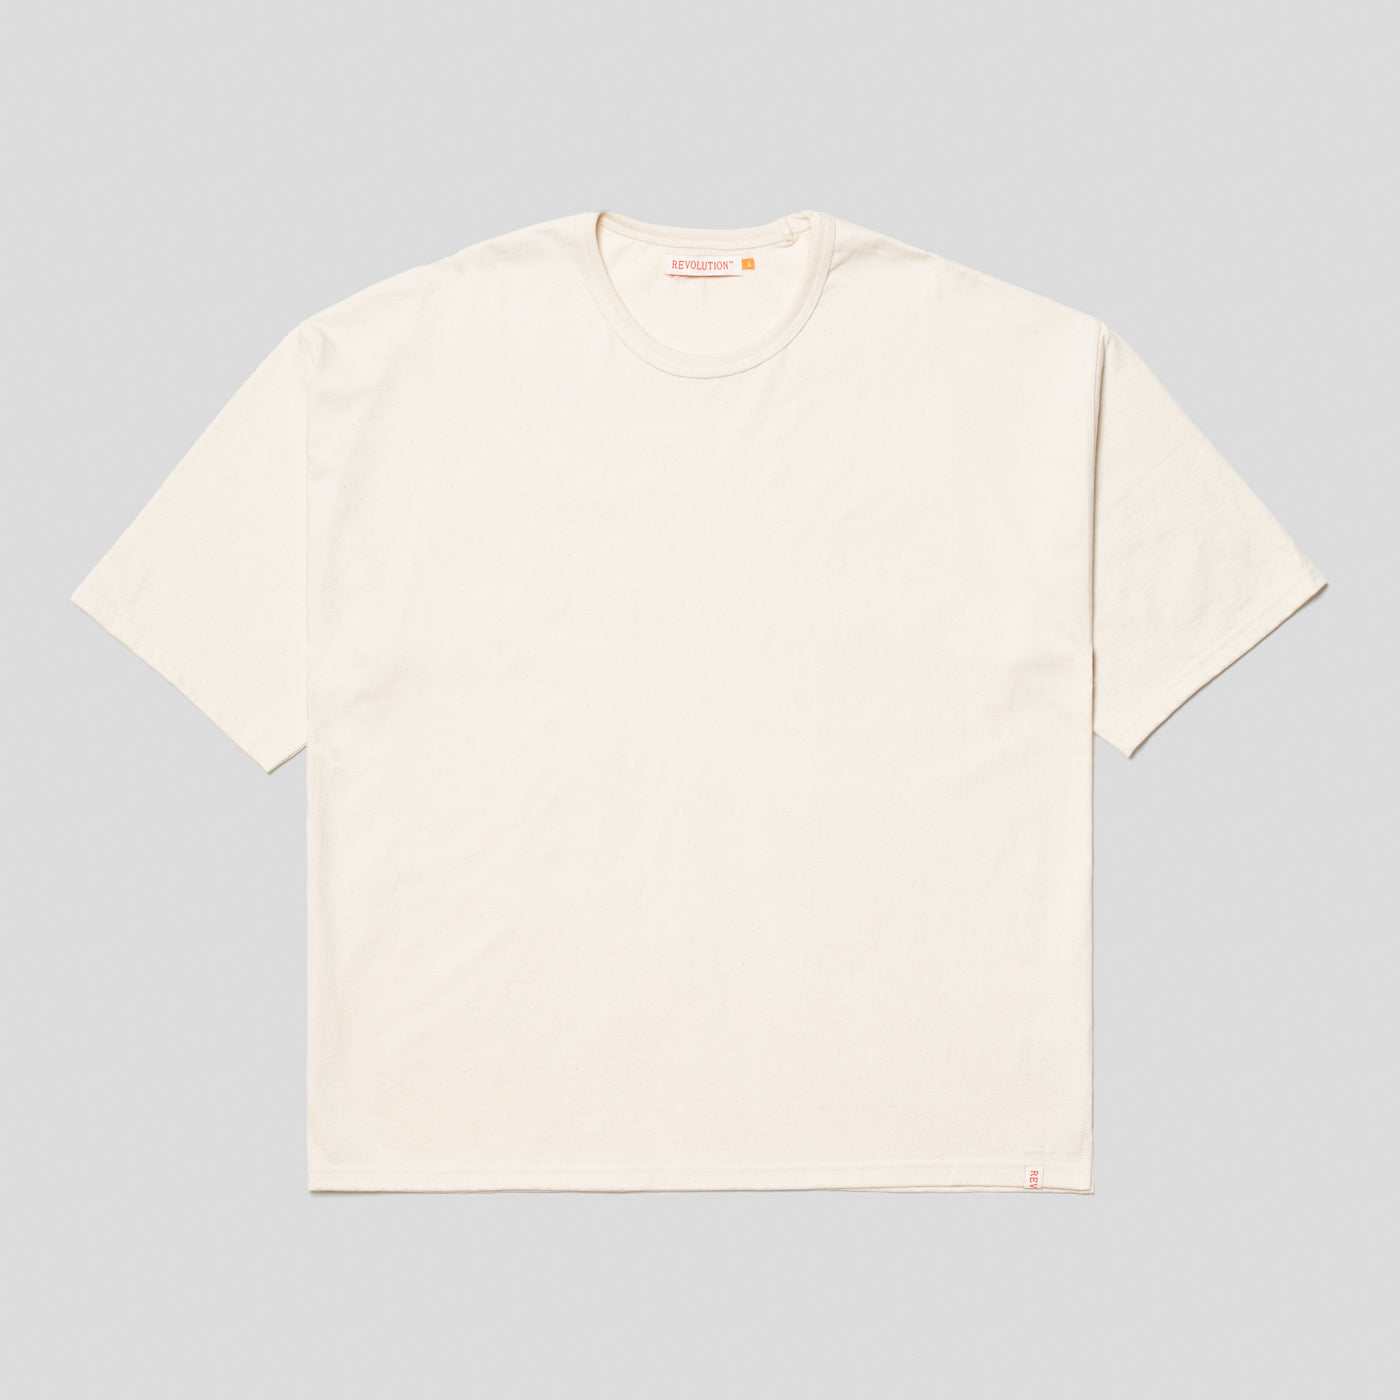 Boxy T-Shirt / Off White